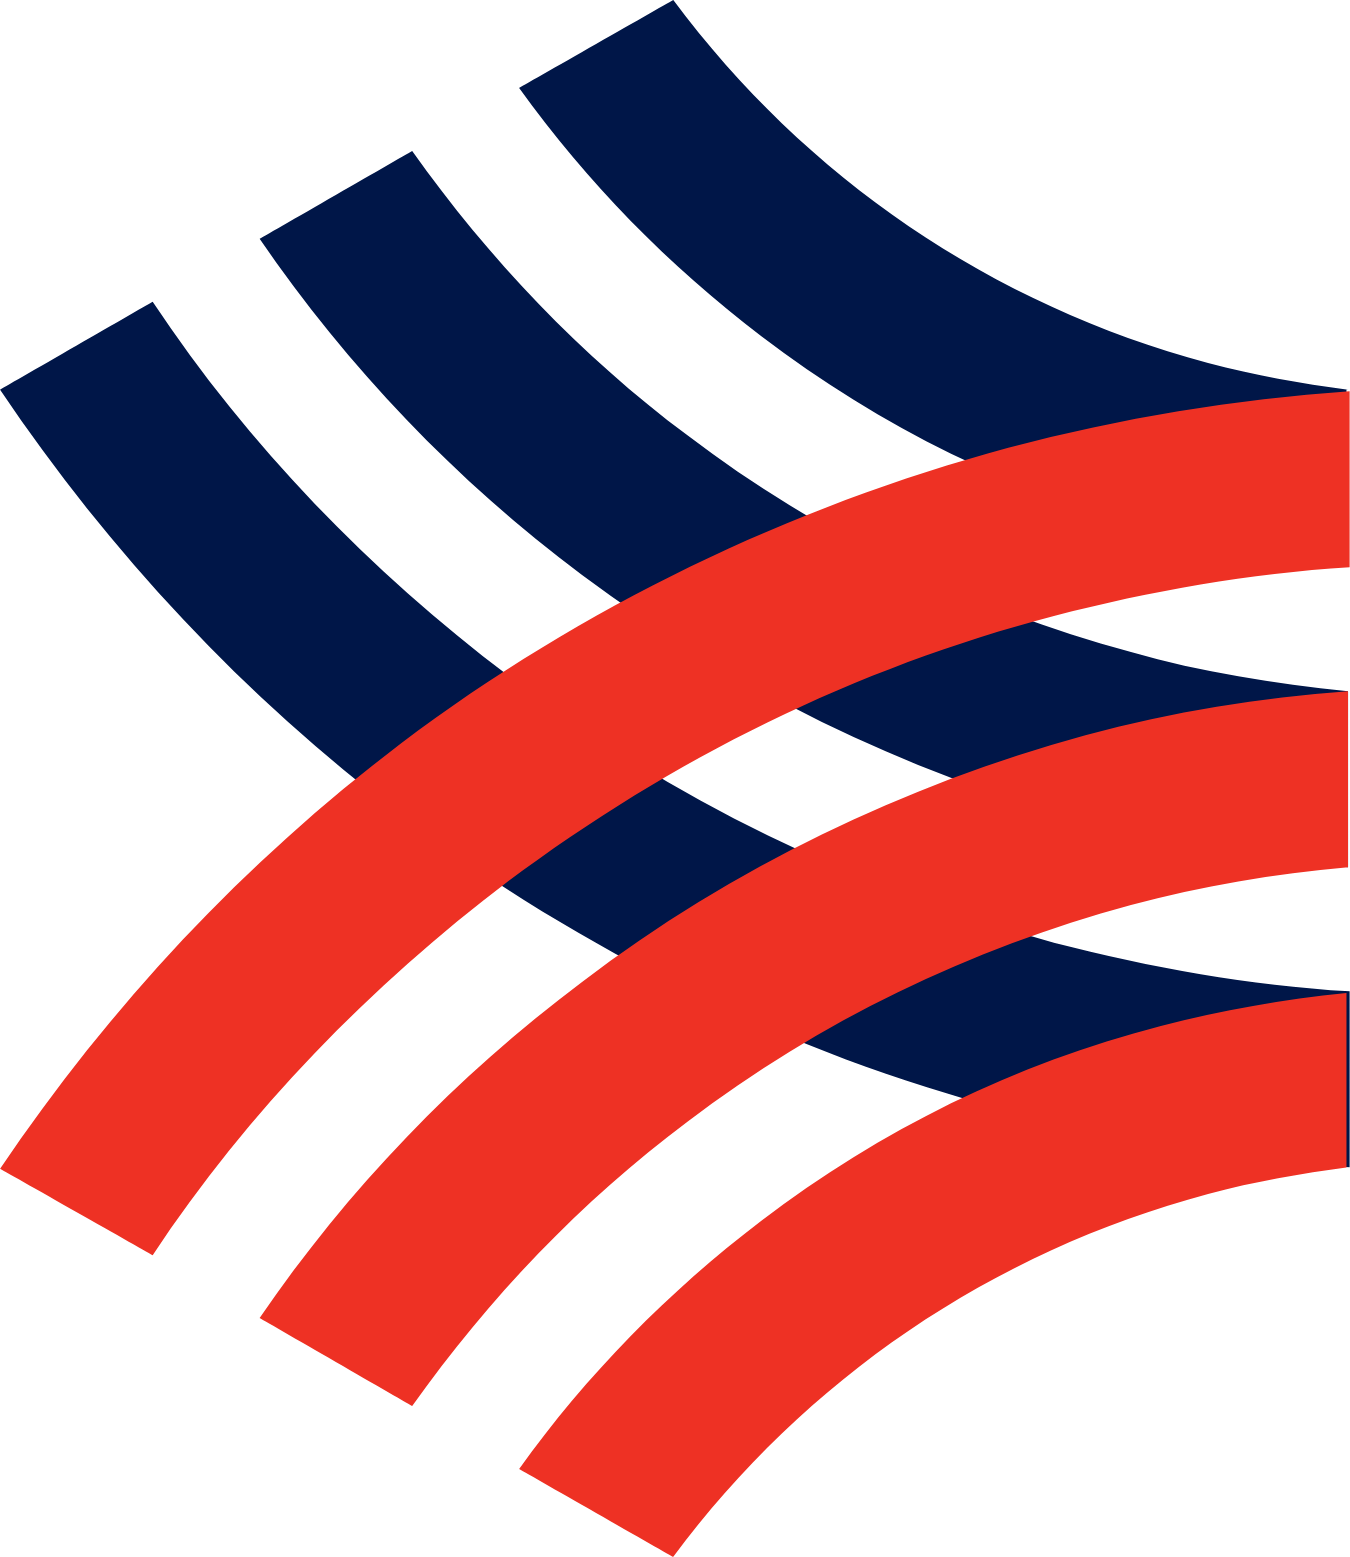 Logo Ngân hàng Hồng Lĩnh: Cùng với sự đổi mới và phát triển, logo của Ngân hàng Hồng Lĩnh cũng được thiết kế theo phong cách hiện đại và đầy sáng tạo. Hãy xem hình ảnh liên quan để khám phá ý nghĩa của logo mới này.